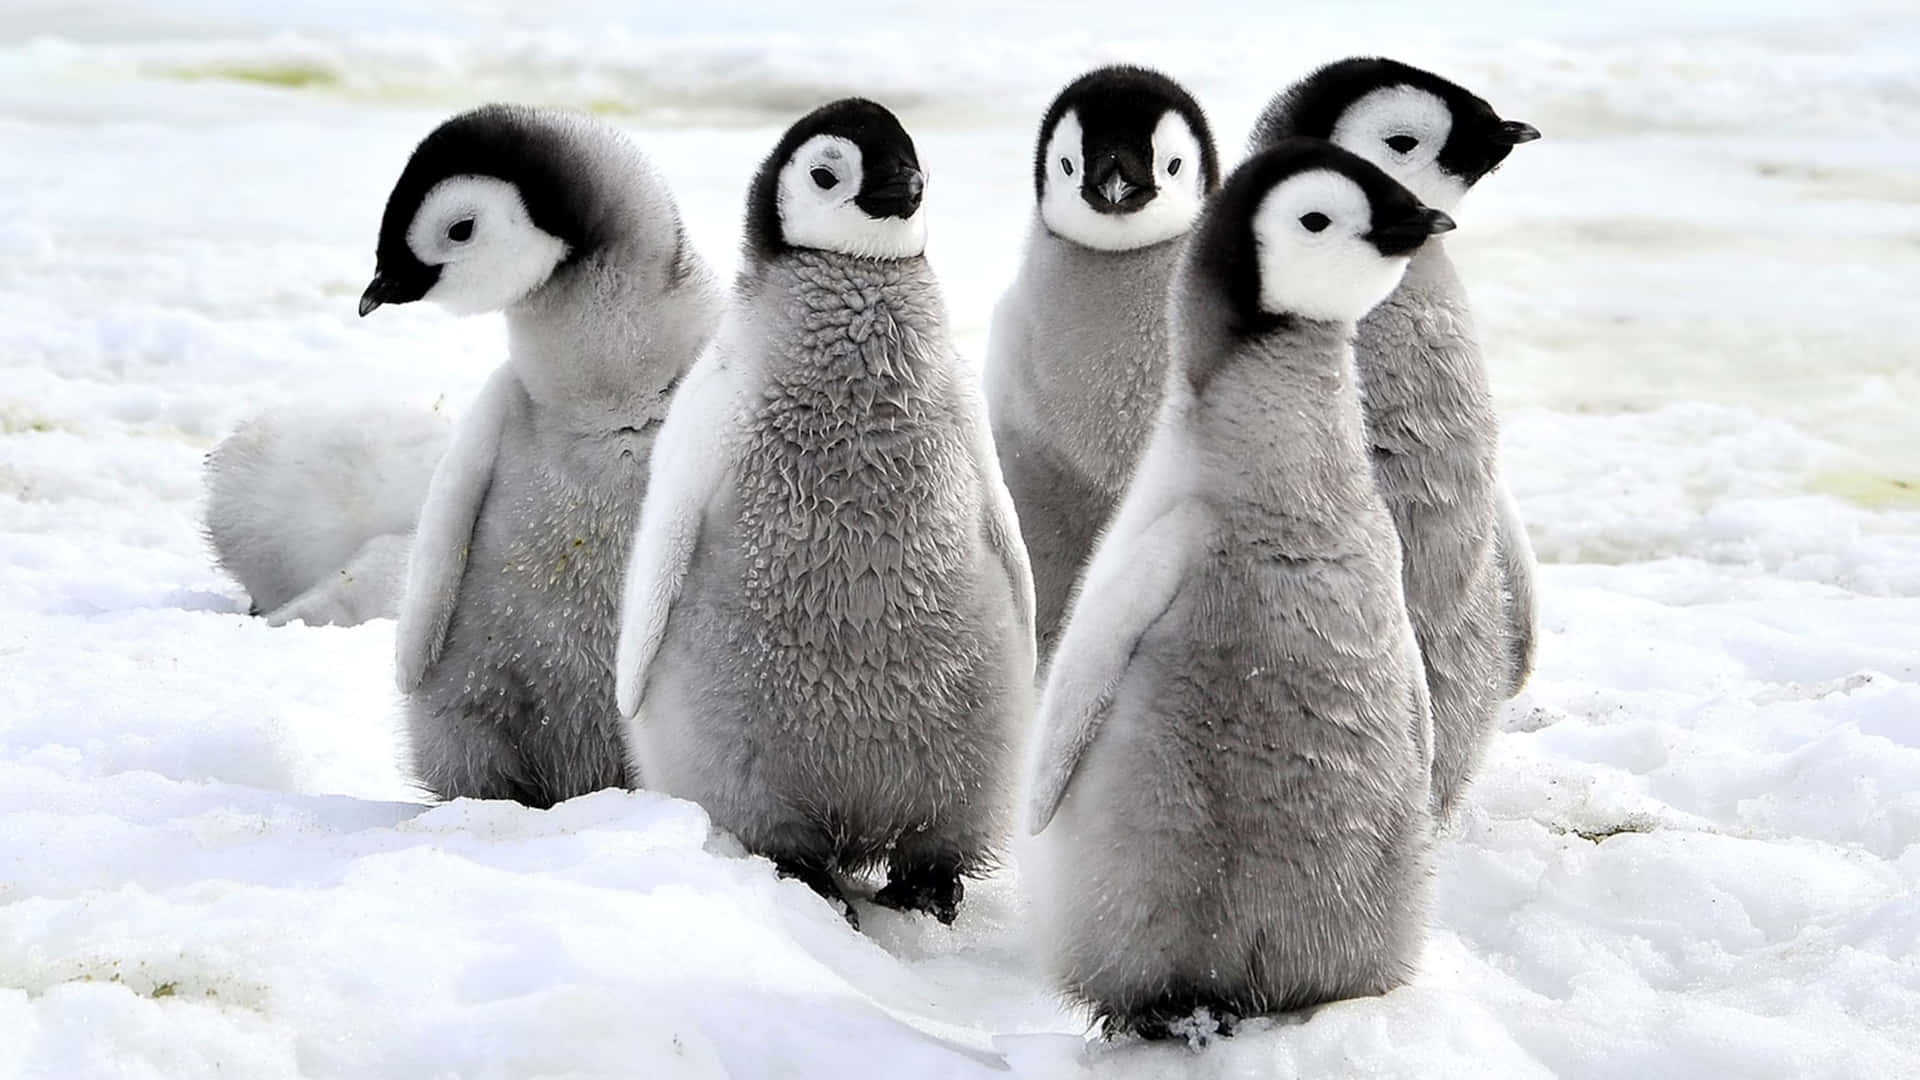 Dieliebe Liegt In Der Luft Mit Diesen Besonders Kuscheligen Pinguinen.